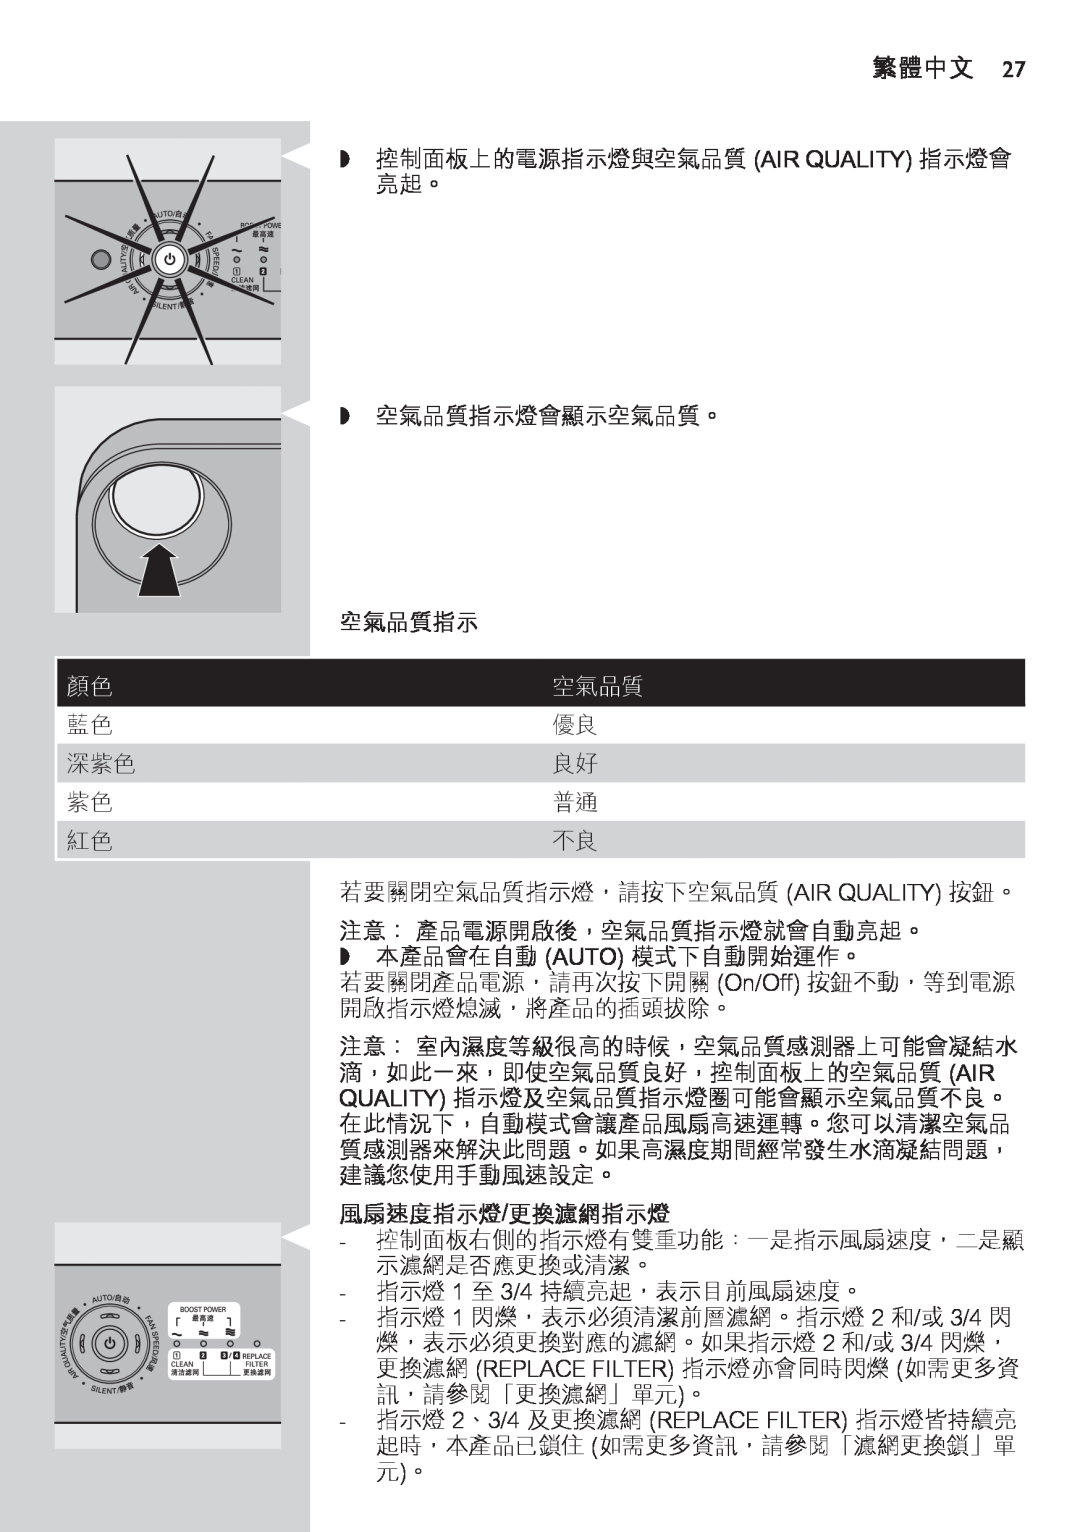 Philips AC4074 manual 空氣品質指示, 風扇速度指示燈/更換濾網指示燈, 繁體中文 